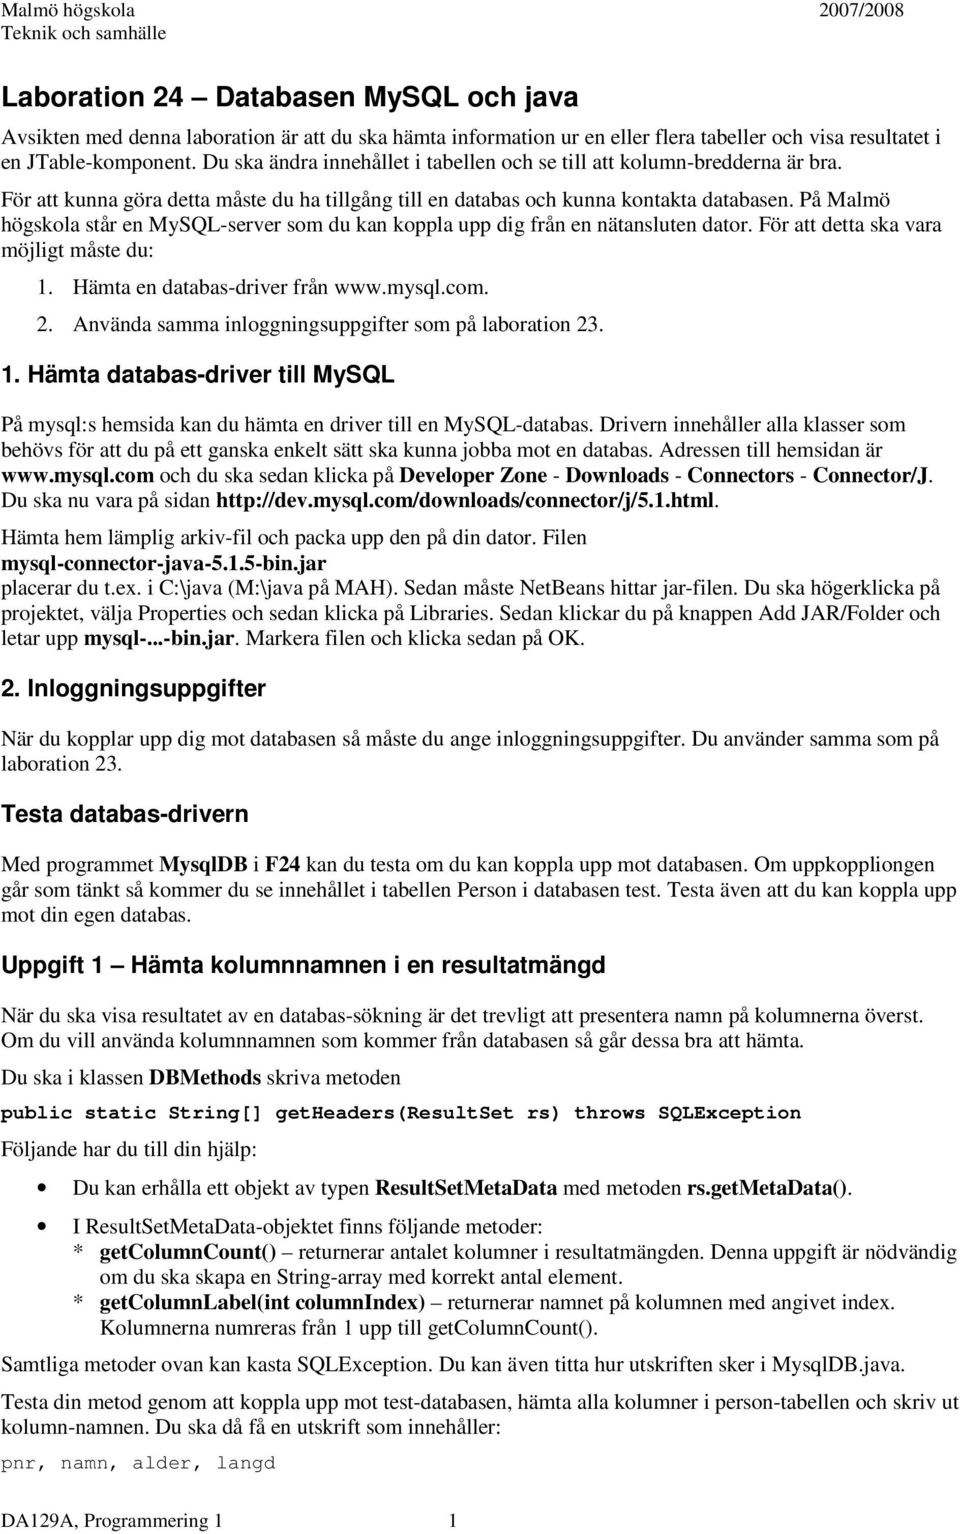 På Malmö högskola står en MySQL-server som du kan koppla upp dig från en nätansluten dator. För att detta ska vara möjligt måste du: 1. Hämta en databas-driver från www.mysql.com. 2.